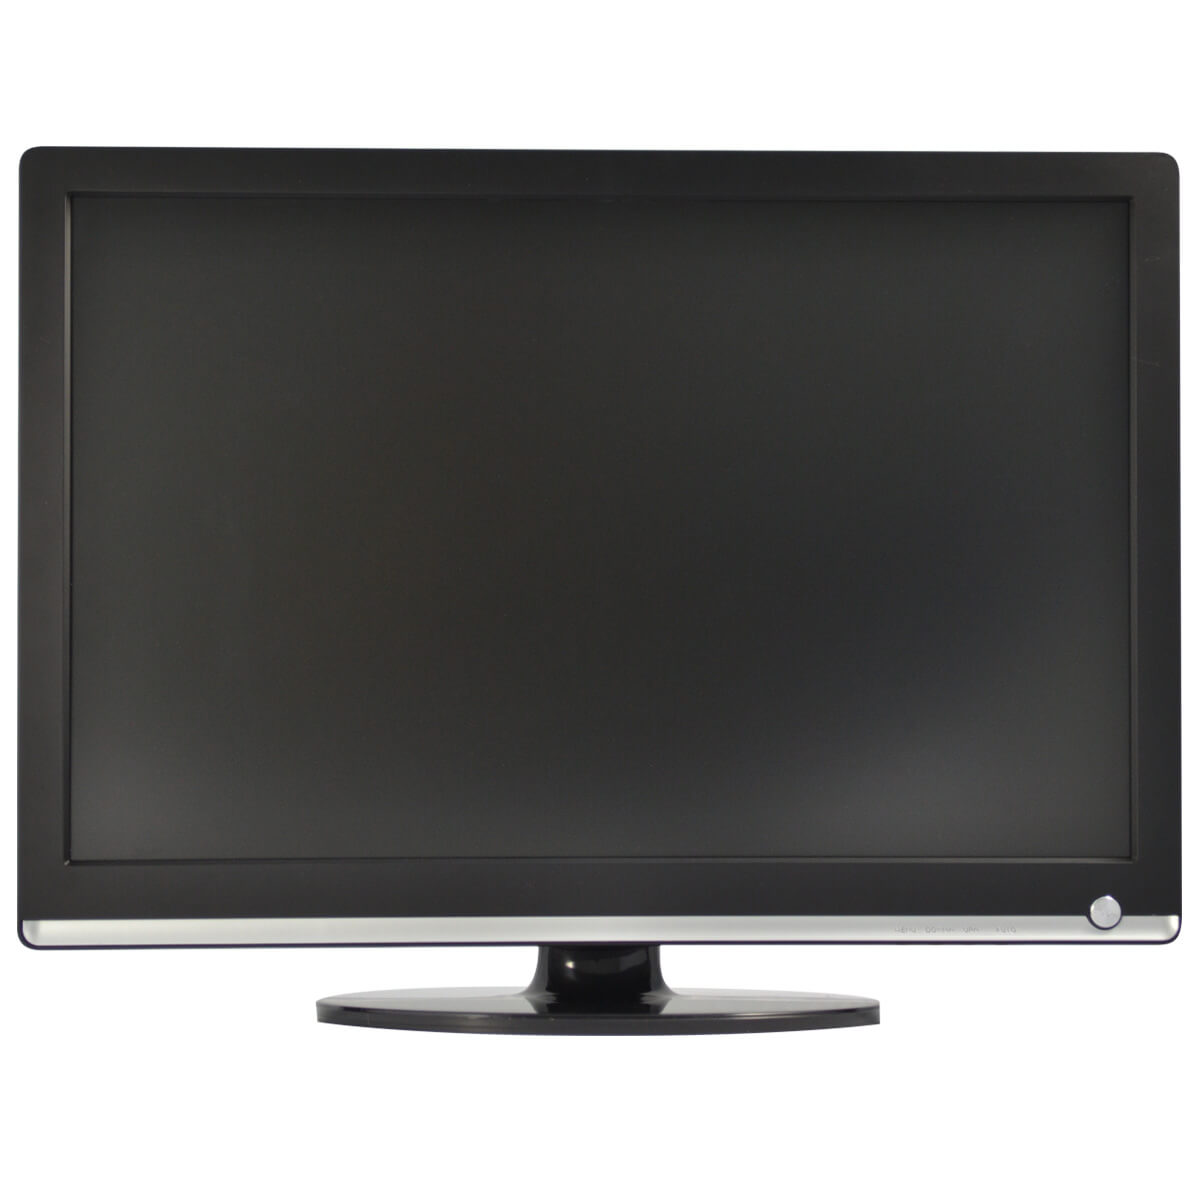 Monitor LCD 22 pulgadas, especial para CCTV